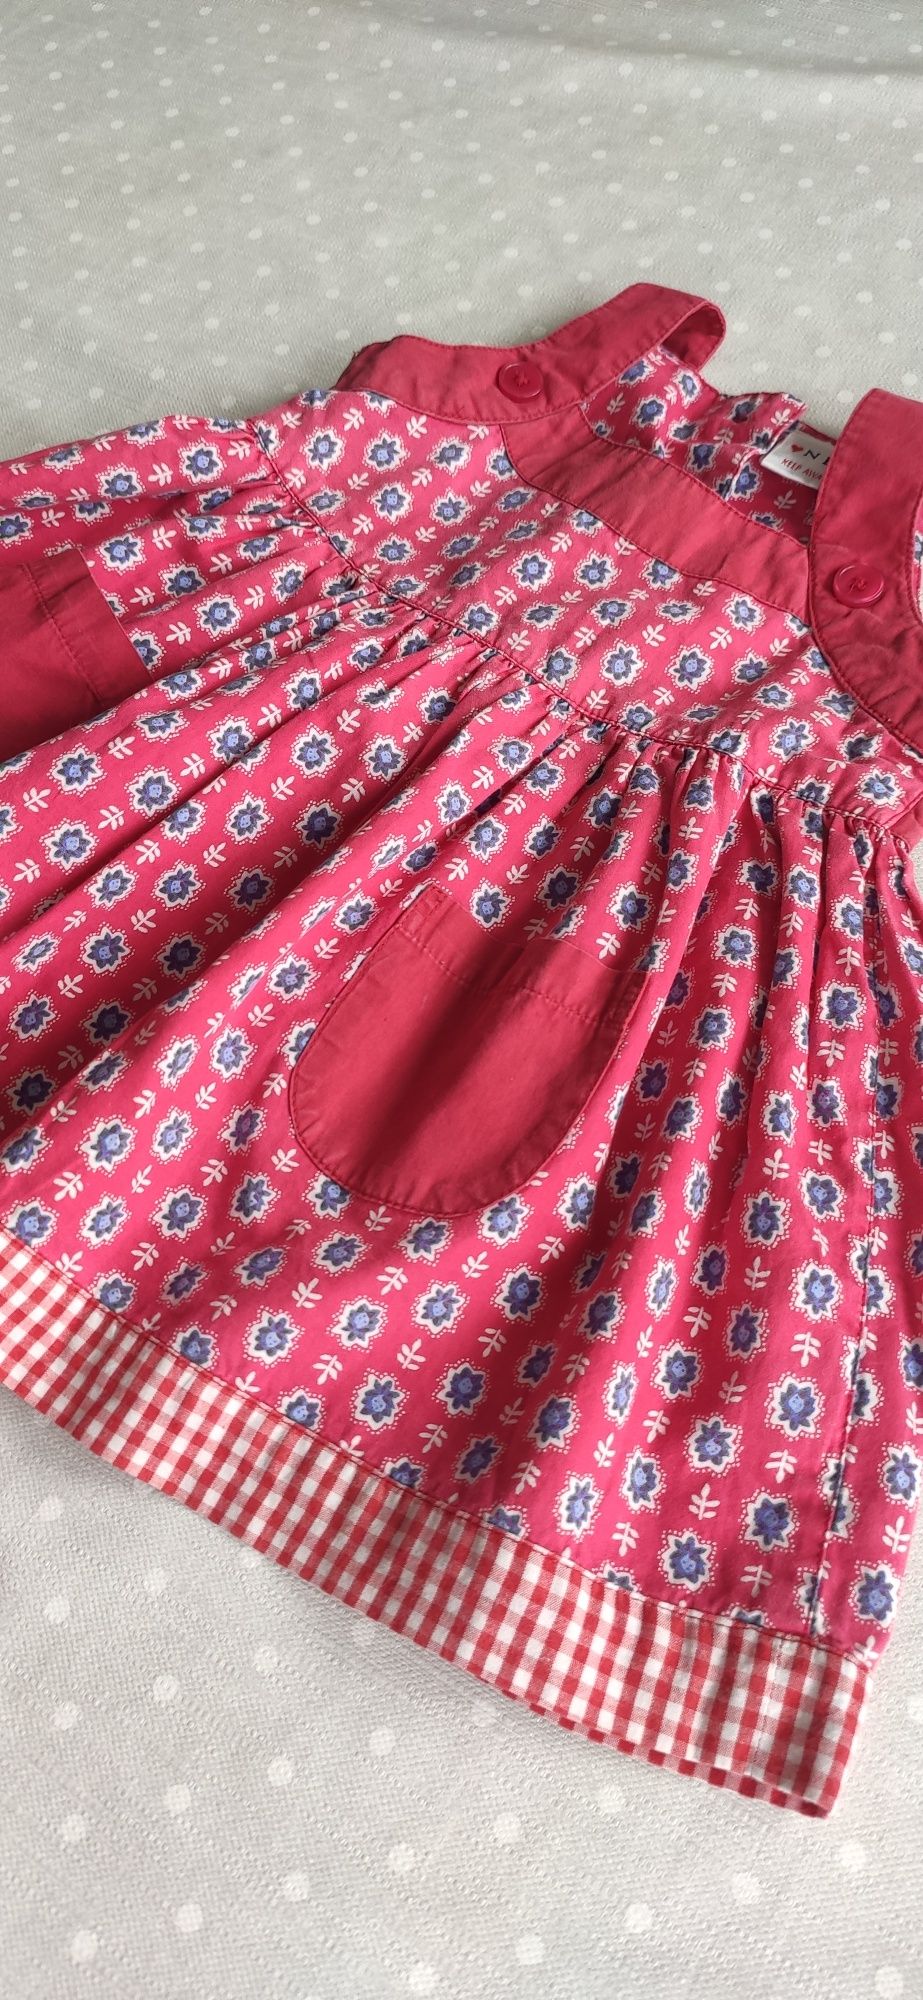 Sukienka NEXT, rozmiar 86 (12-18 miesięcy), czerwona.